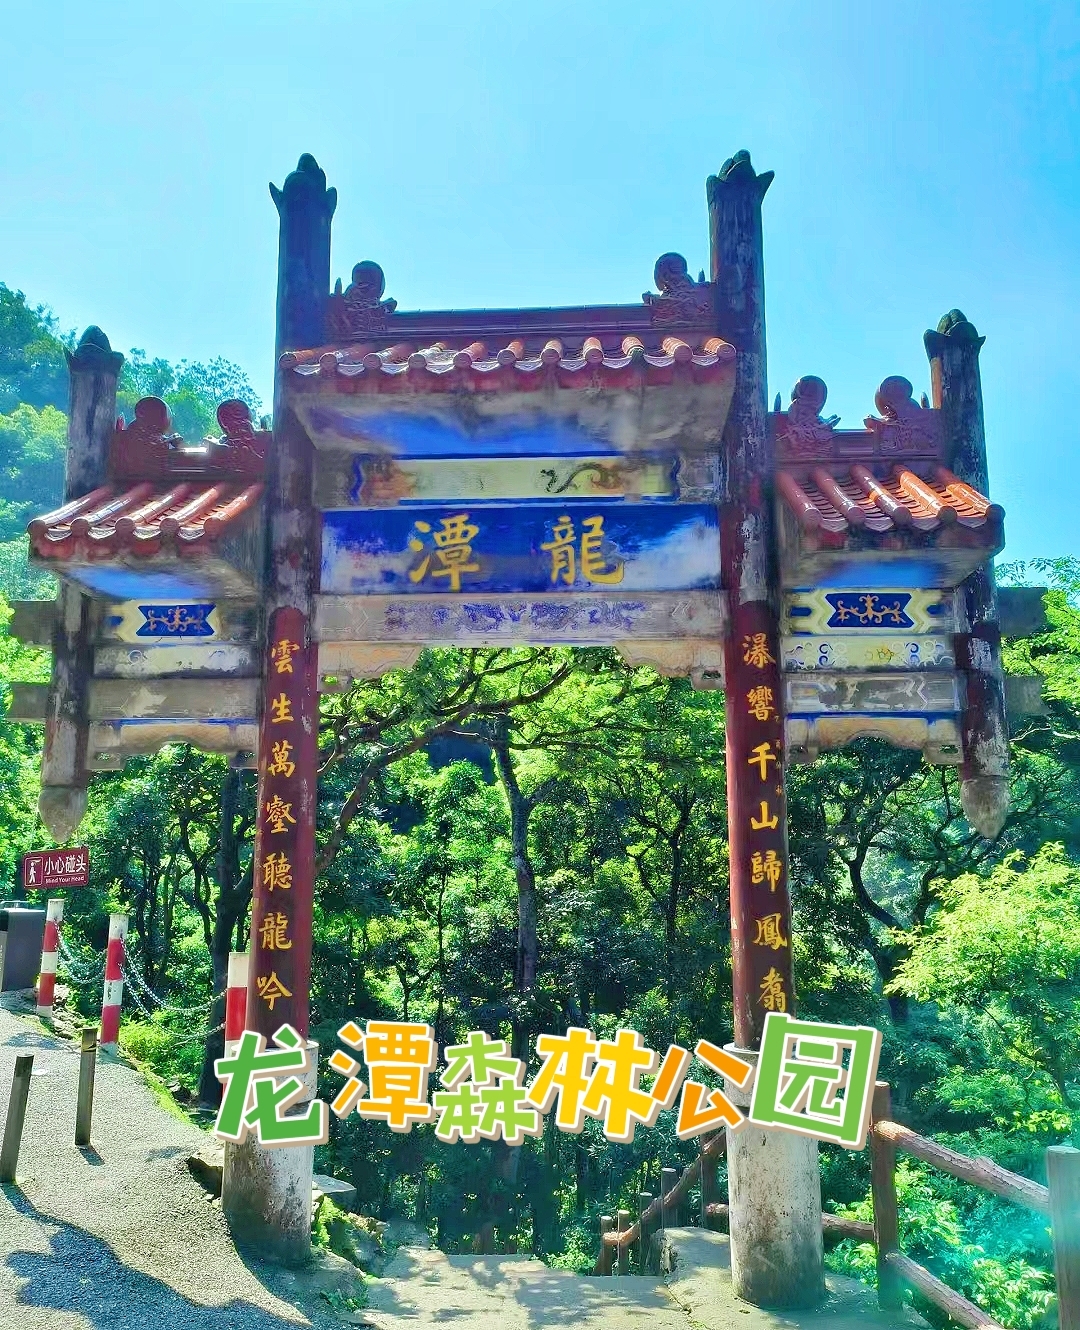 “避暑胜地！桂平龙潭森林公园邀您体验原始森林漂流与戏水乐趣